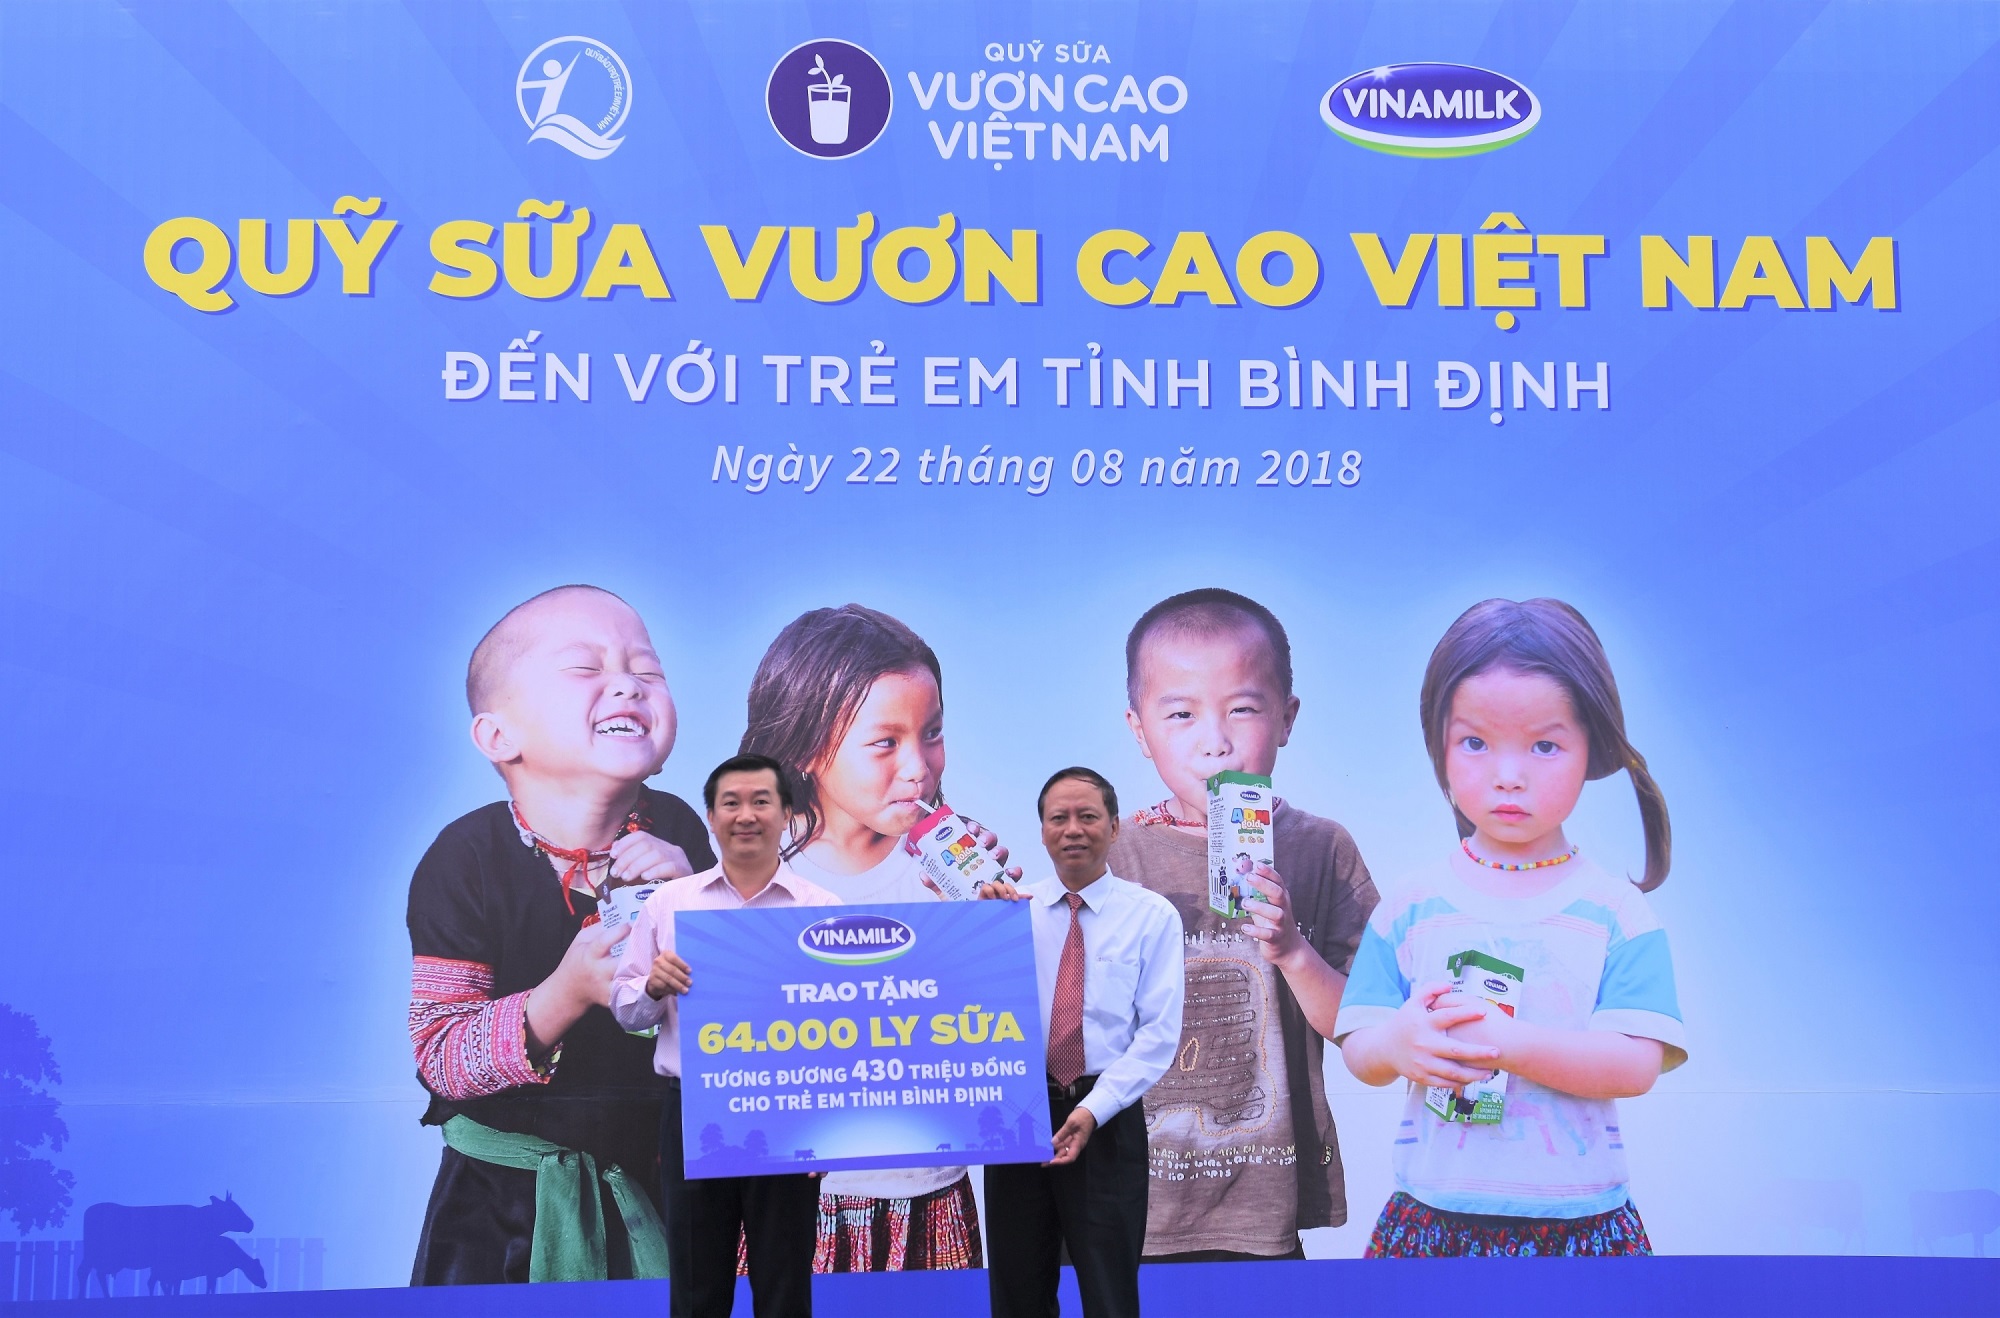 Quỹ Sữa vươn cao Việt Nam và Vinamilk tiếp tục trao 64.000 ly sữa cho trẻ em tỉnh Bình Định - Ảnh 4